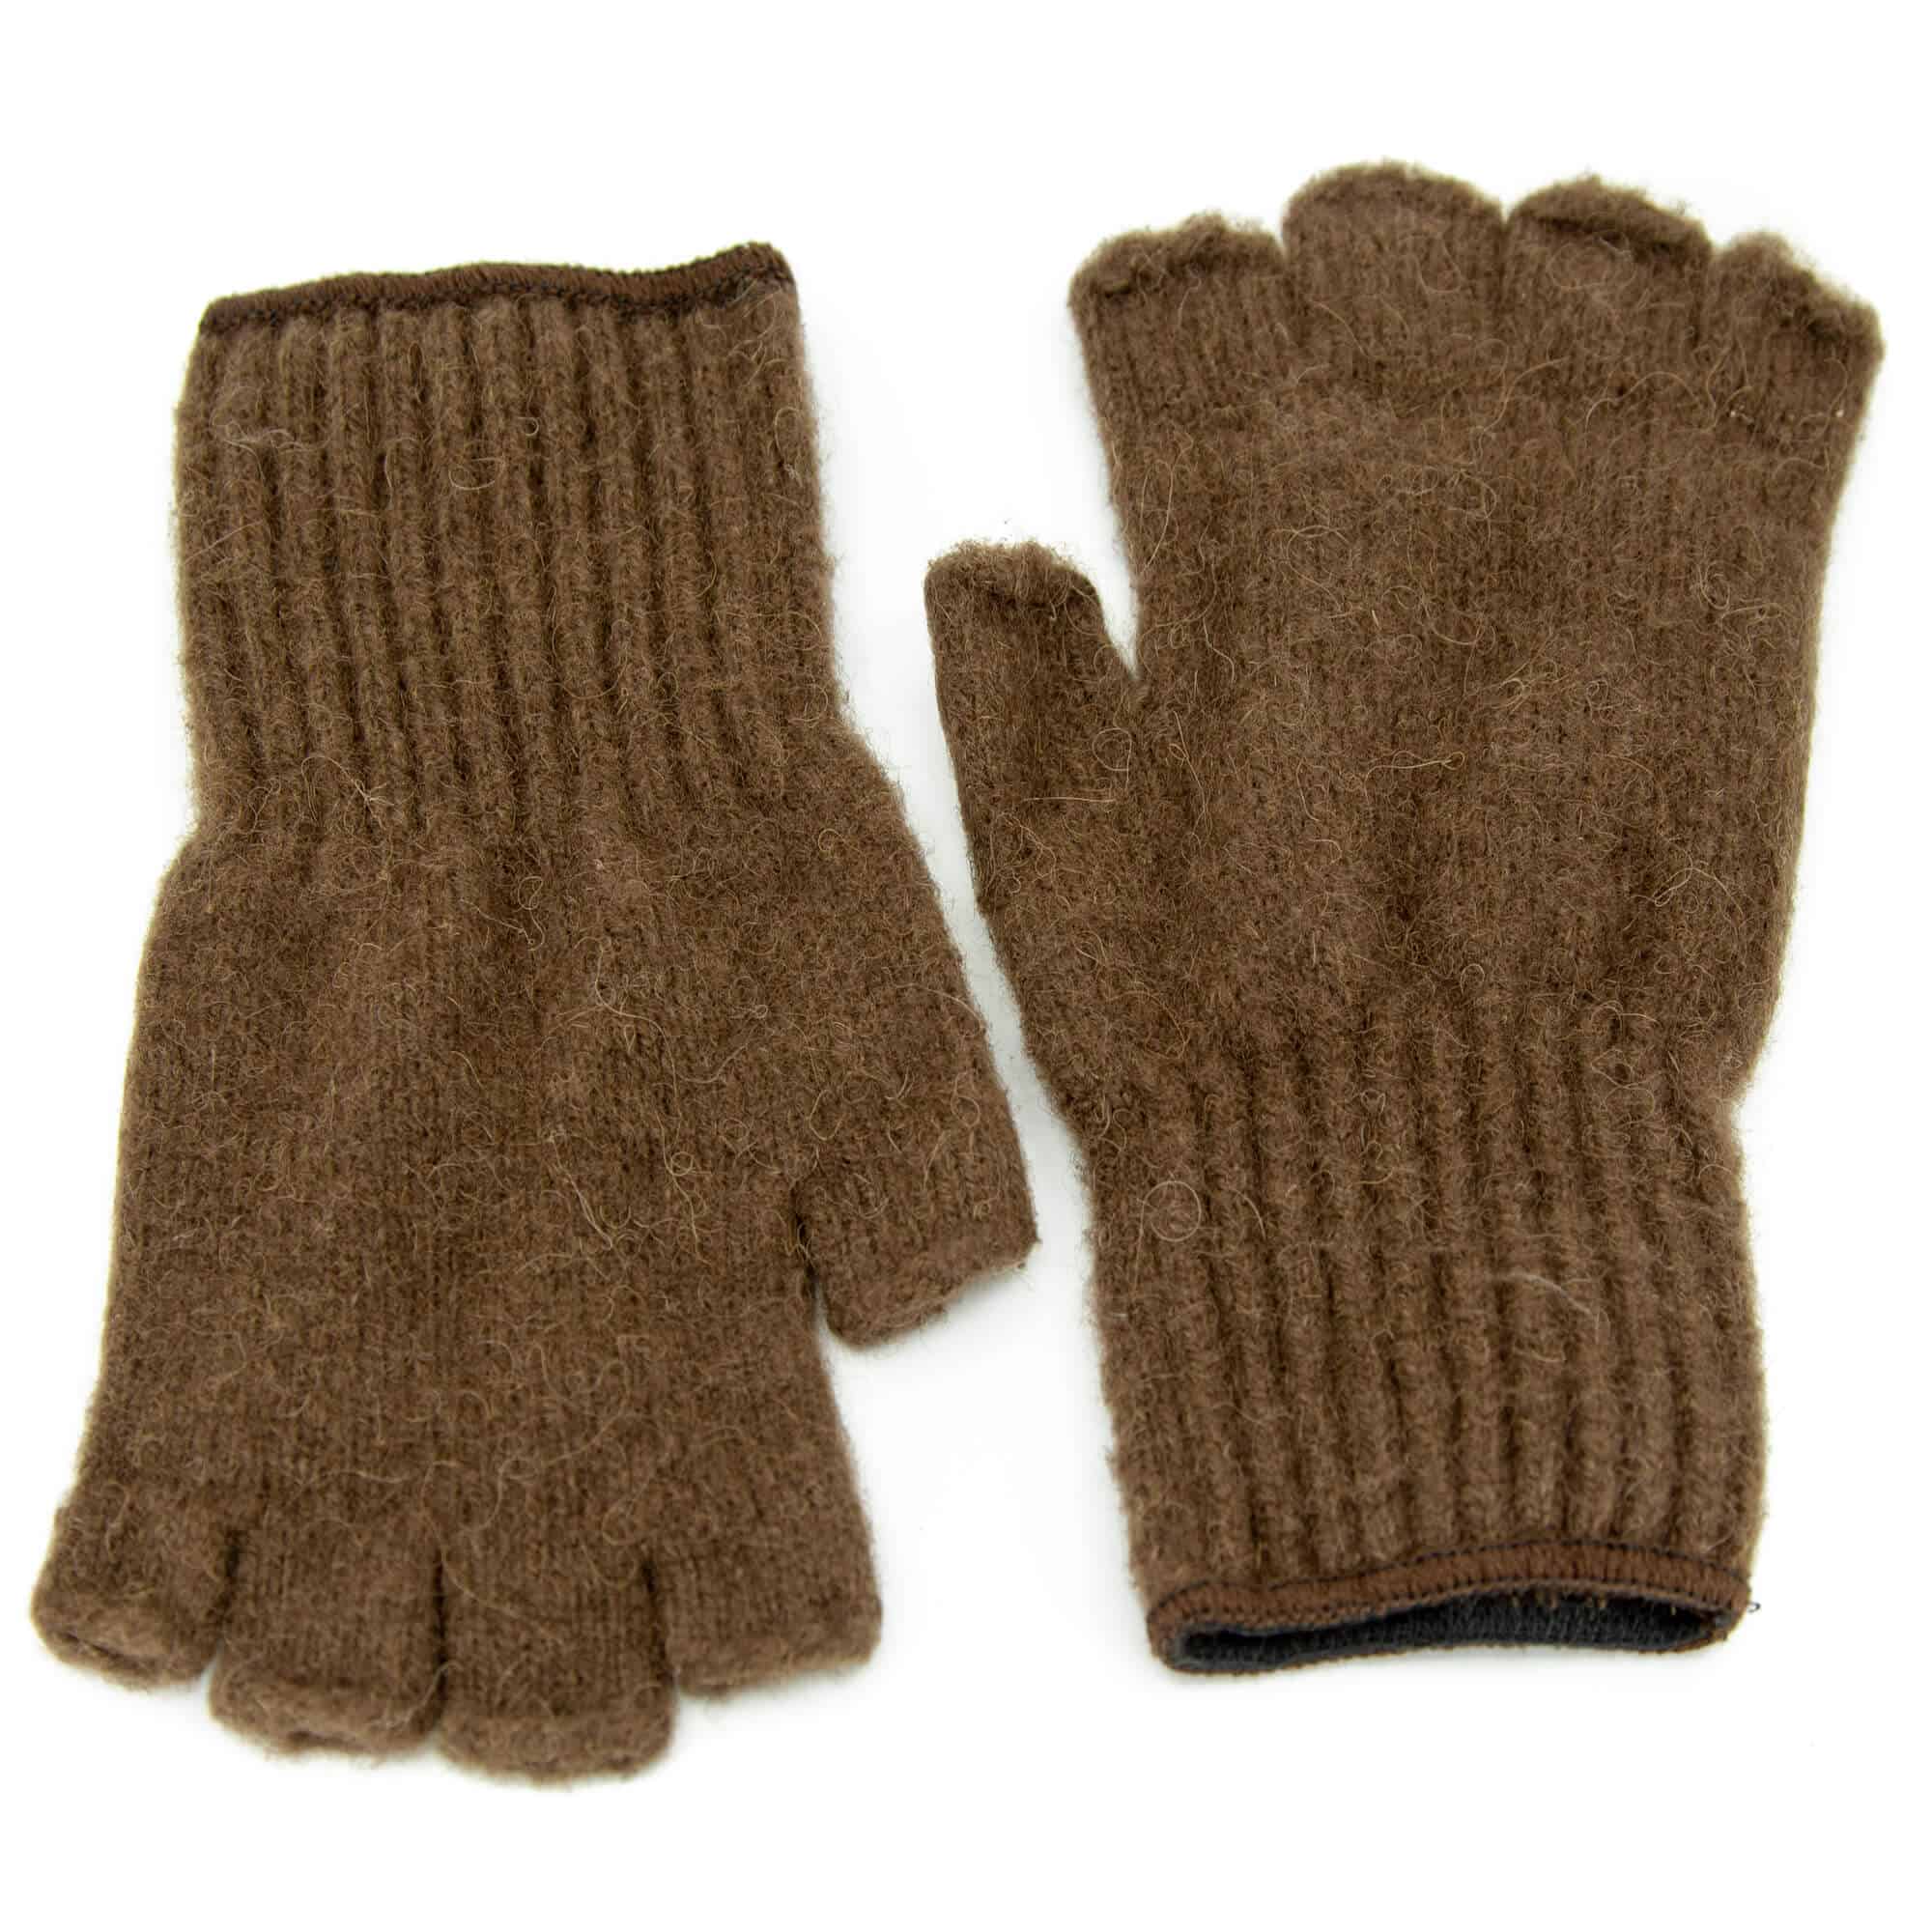 BIson Leather Fingerless Gloves Accessories Gloves & Mittens Gardening & Work Gloves 